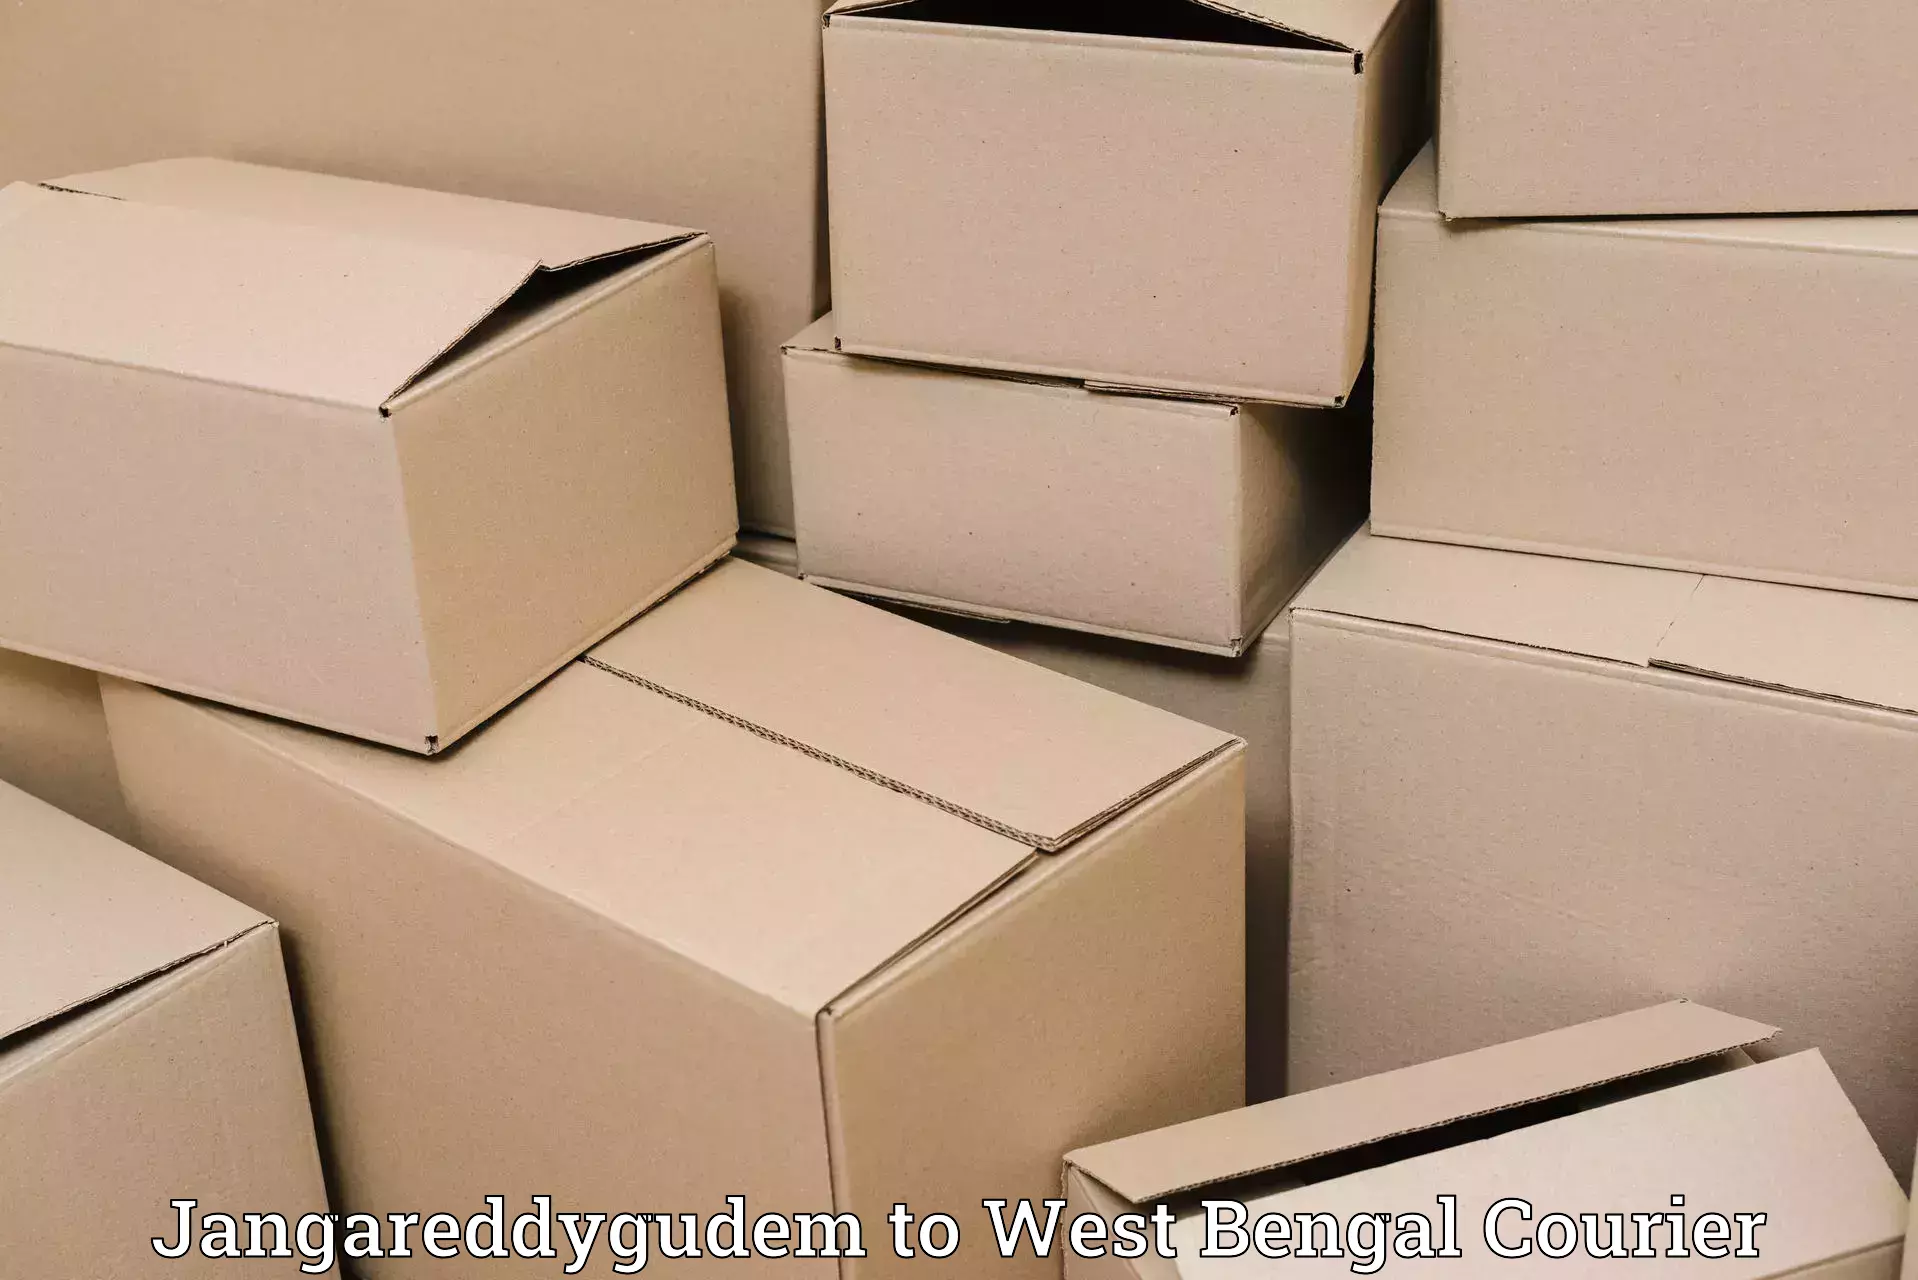 Affordable parcel service Jangareddygudem to Dalkhola